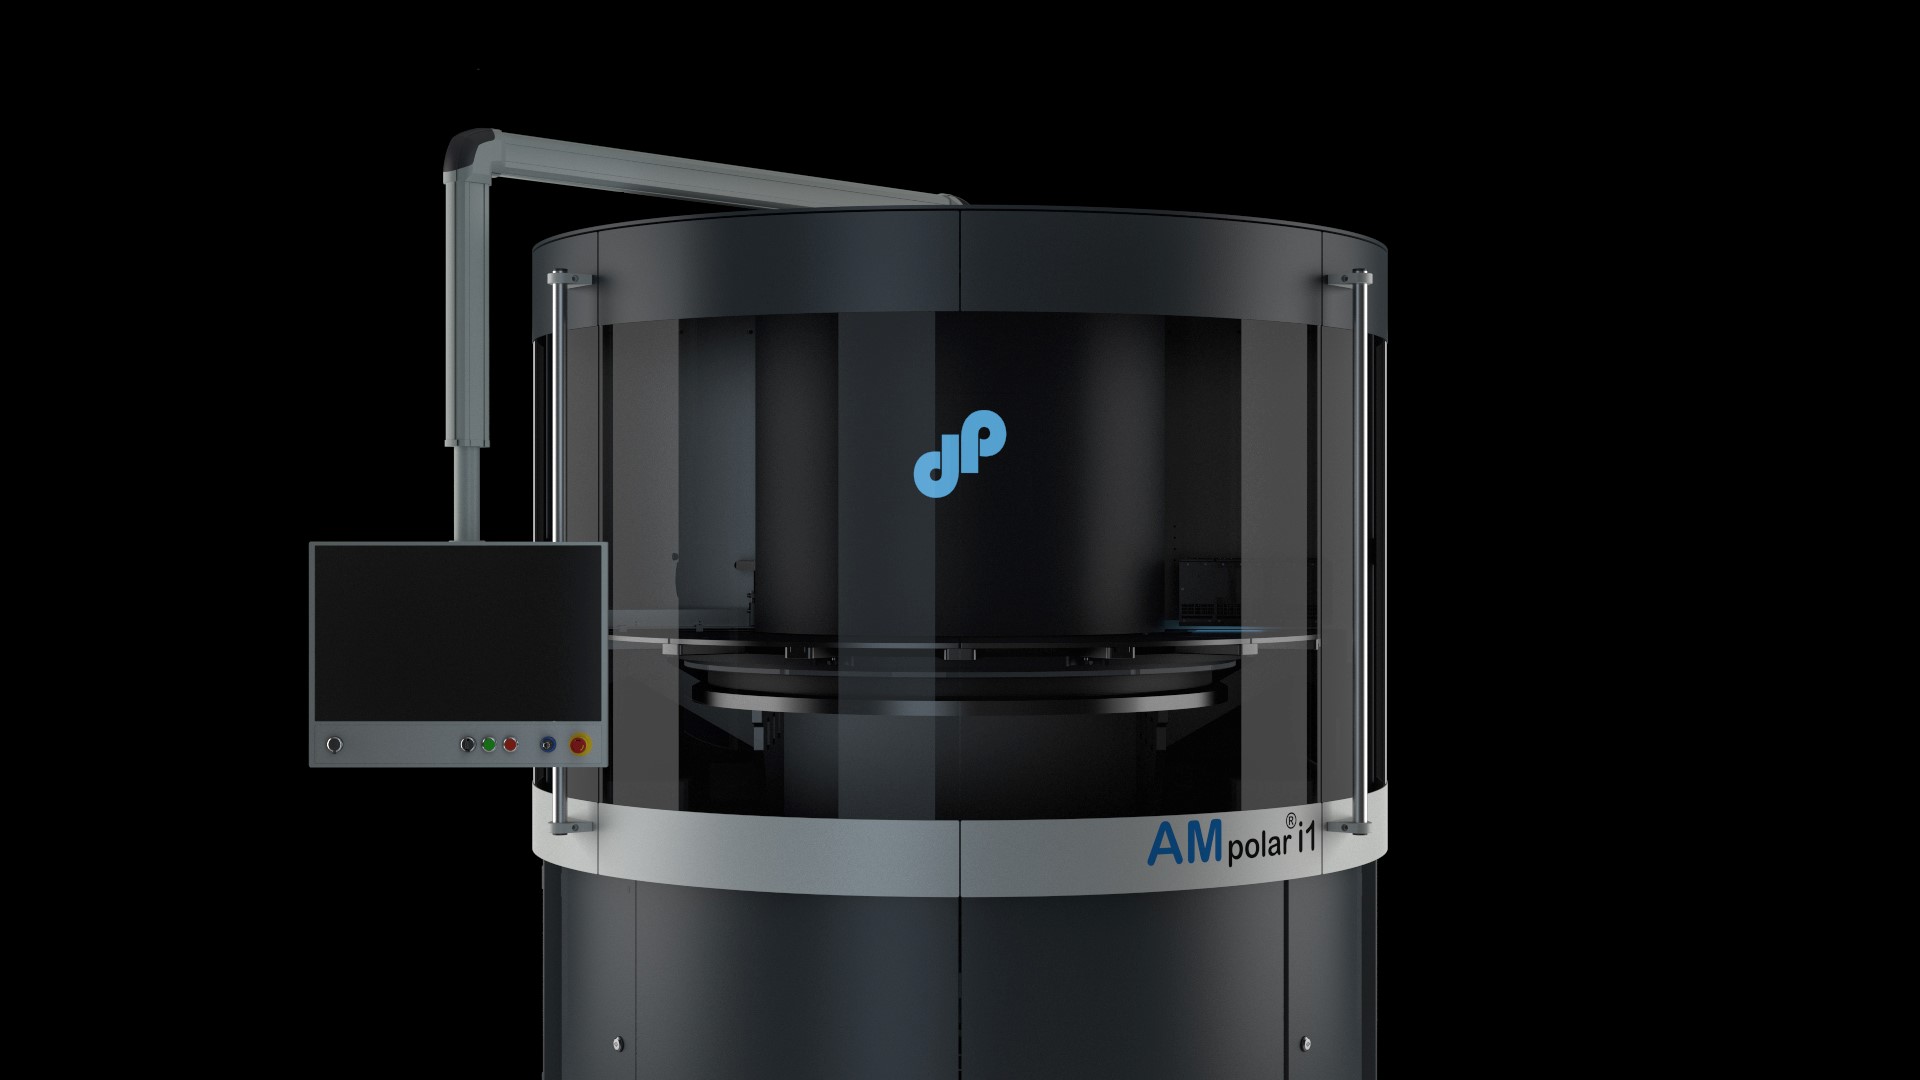 The AMpolar i1 3D printer. Photo via Xaar.